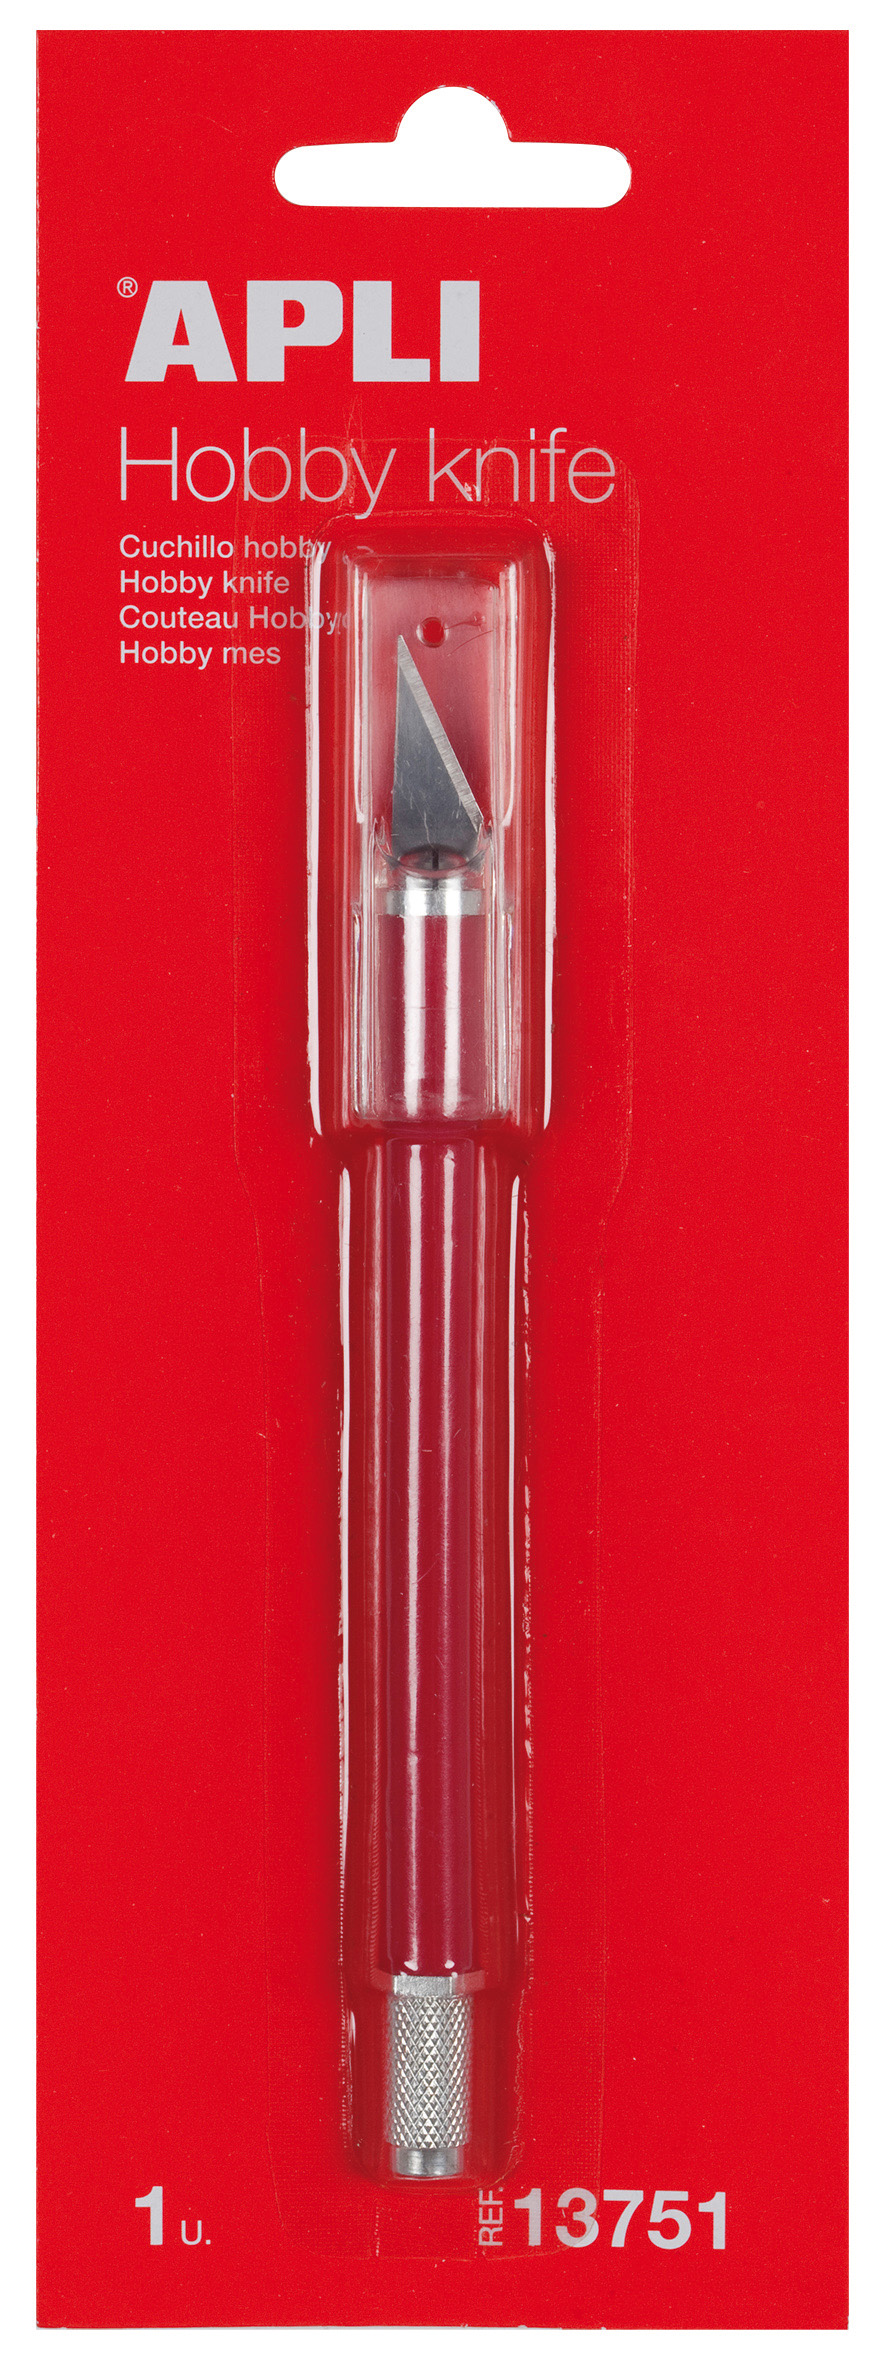 Couteau Apli Precision Hobby - Longueur Lame 3cm - Lame en Acier Inoxydable - Manche Caoutchouté - Lame de Rechange Incluse